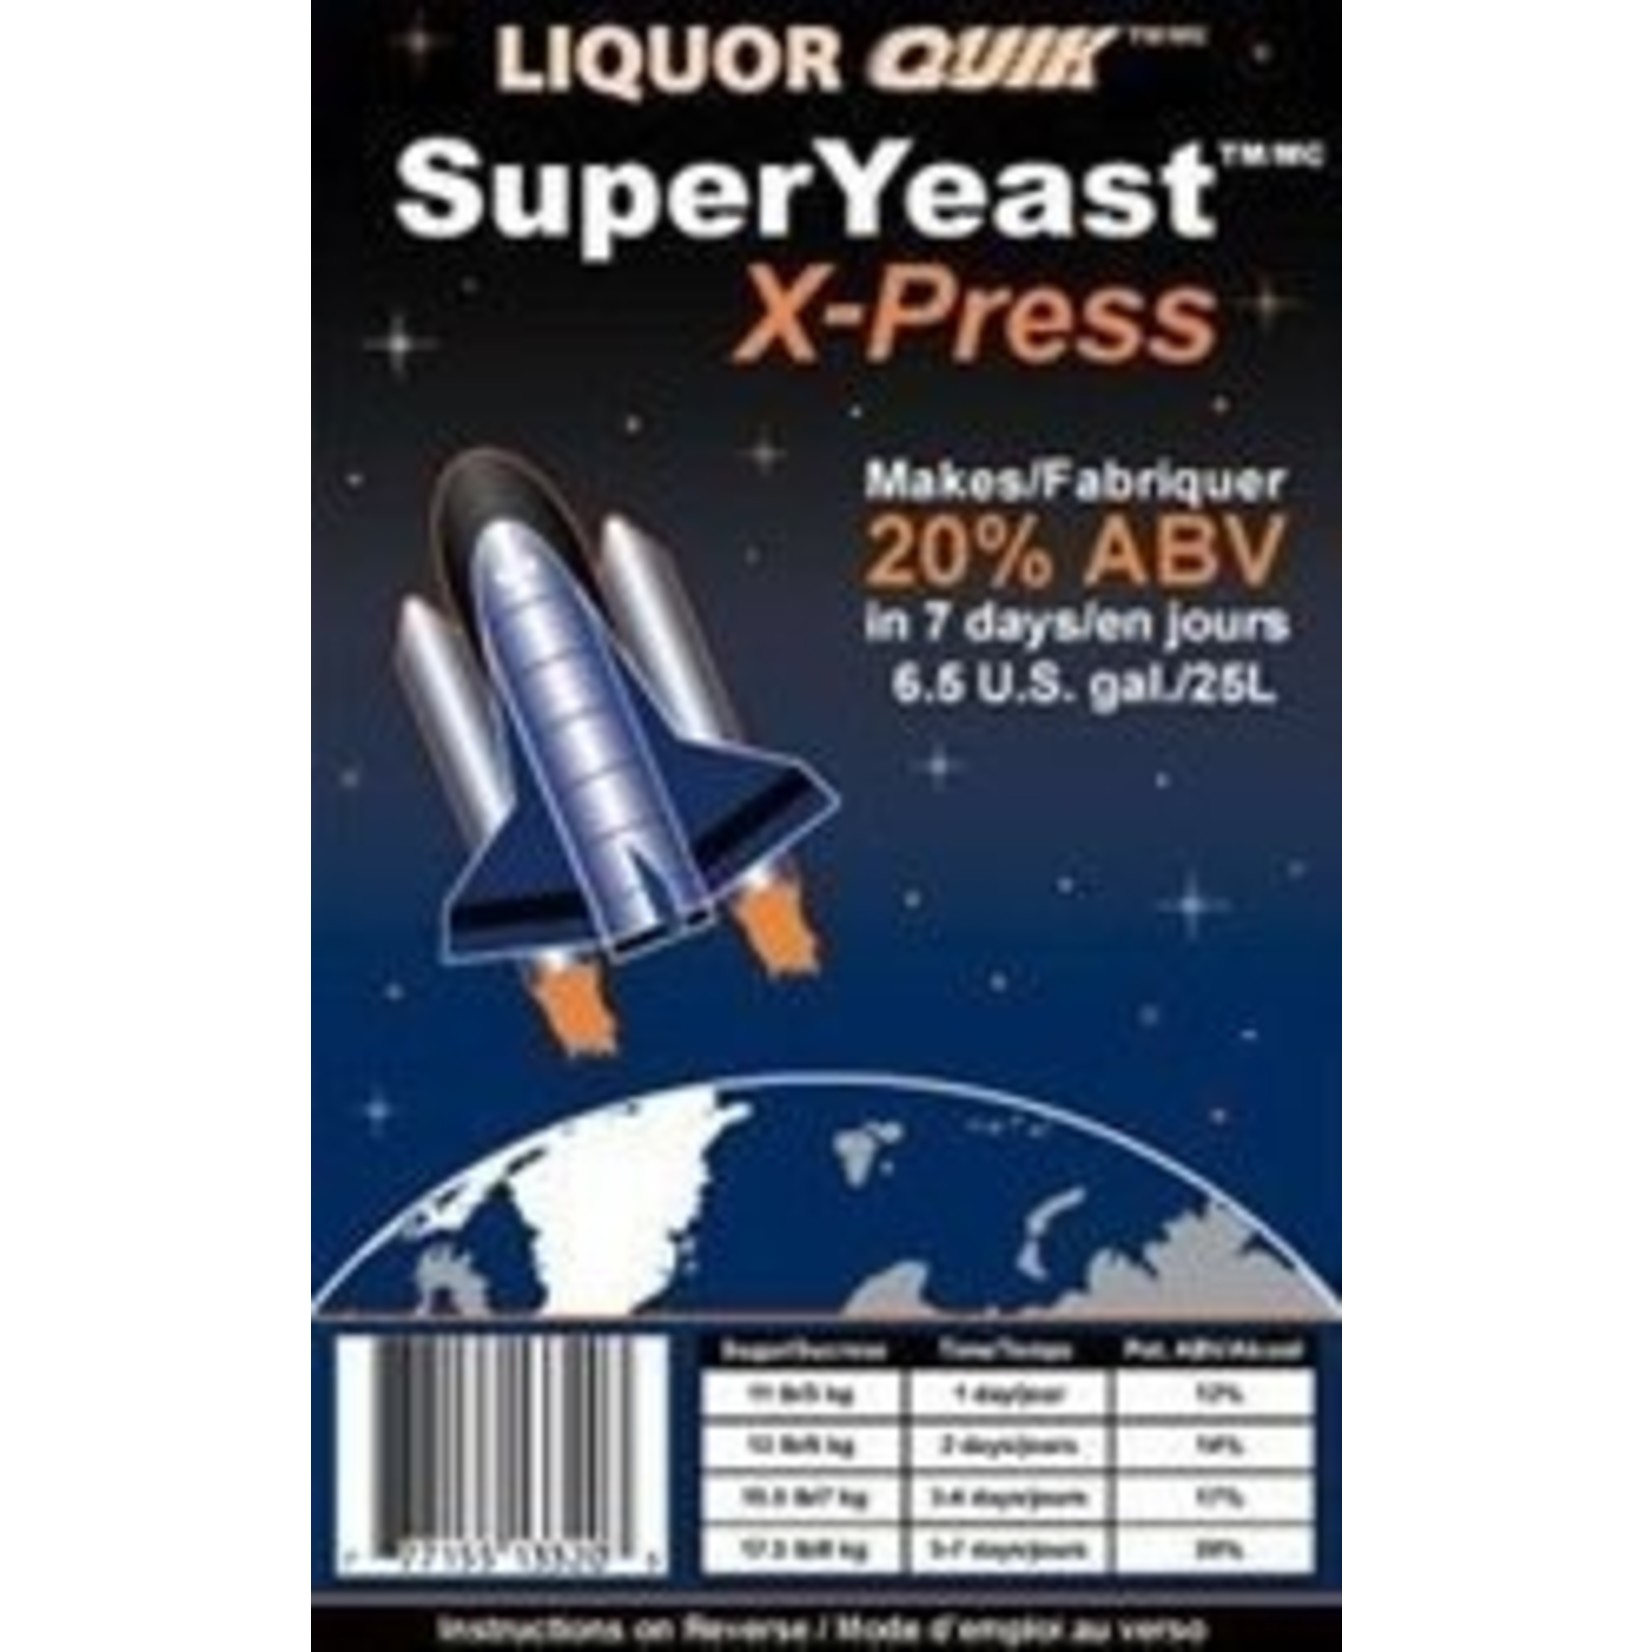 Rocket Super X-Press Distiller's Yeast